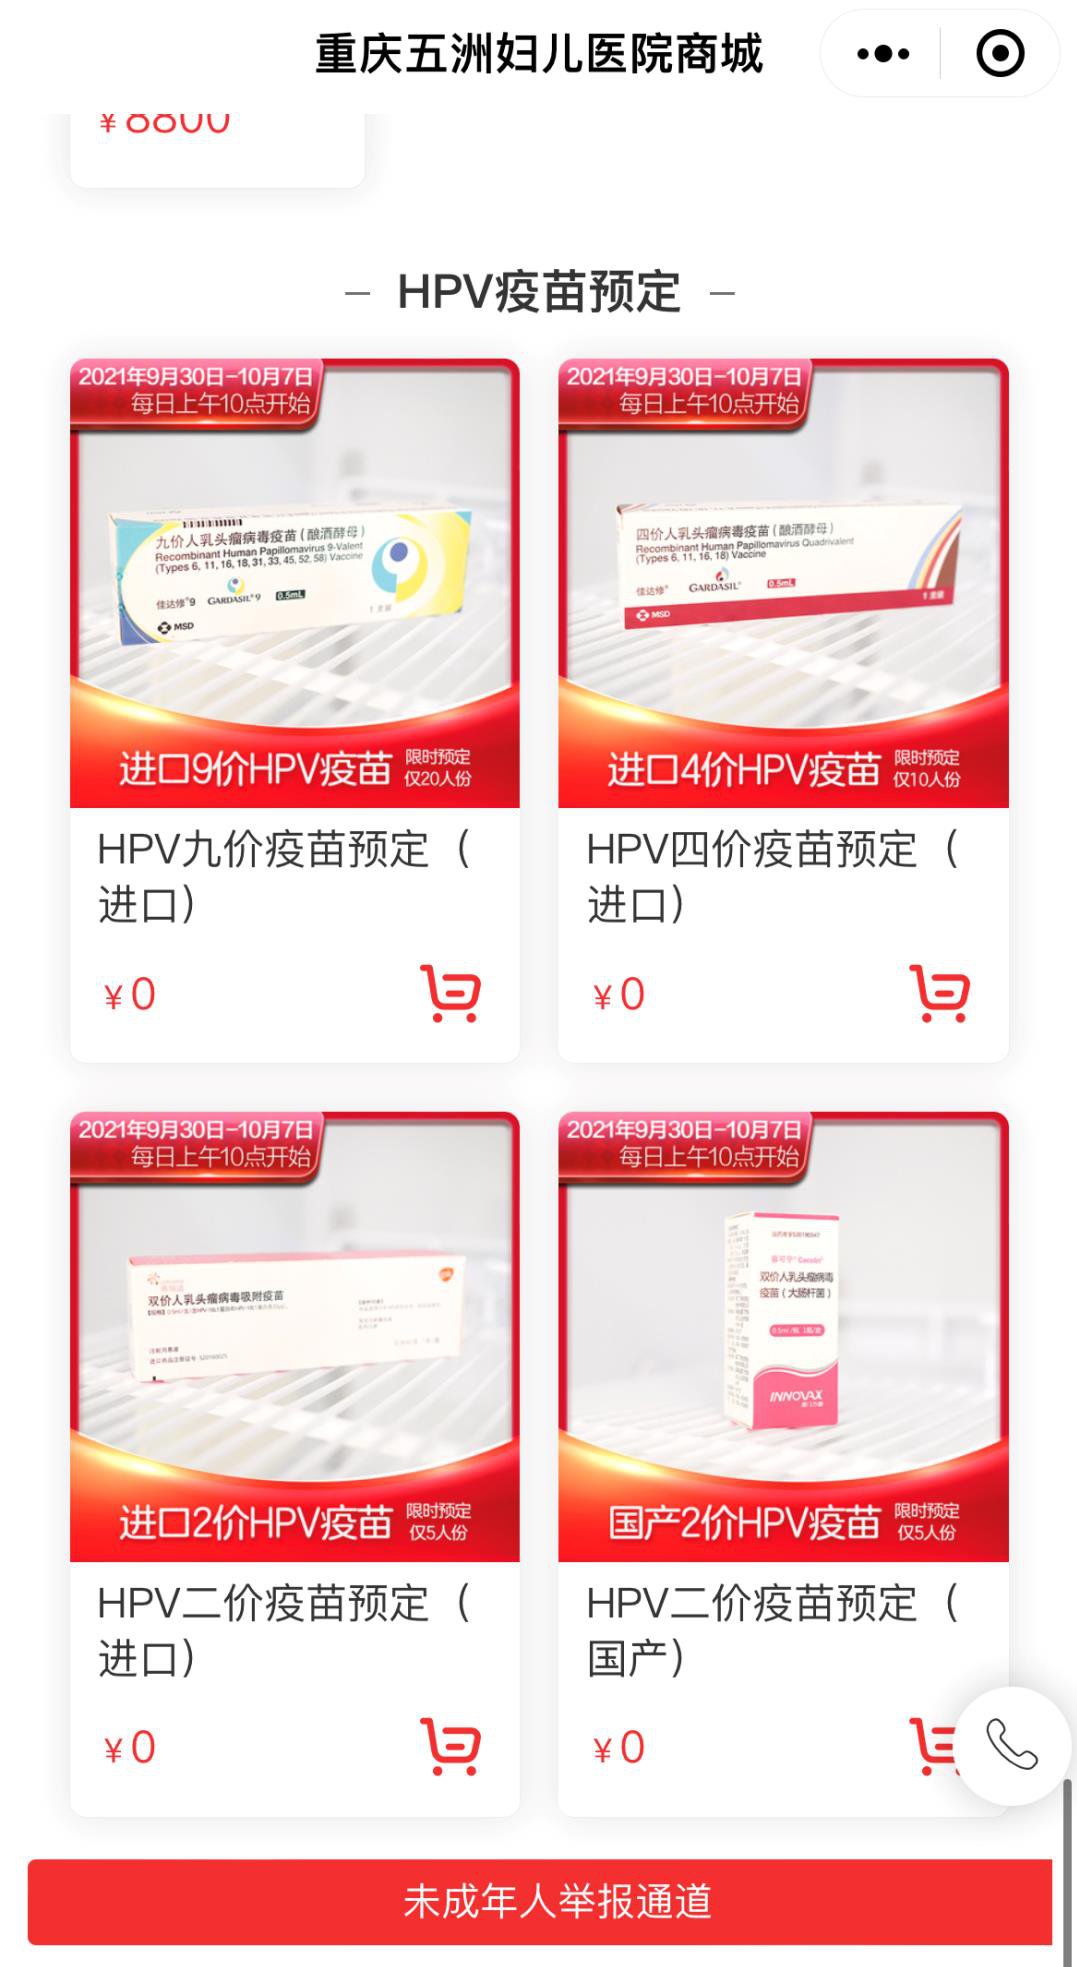 重庆五洲妇儿医院HPV疫苗预约方式